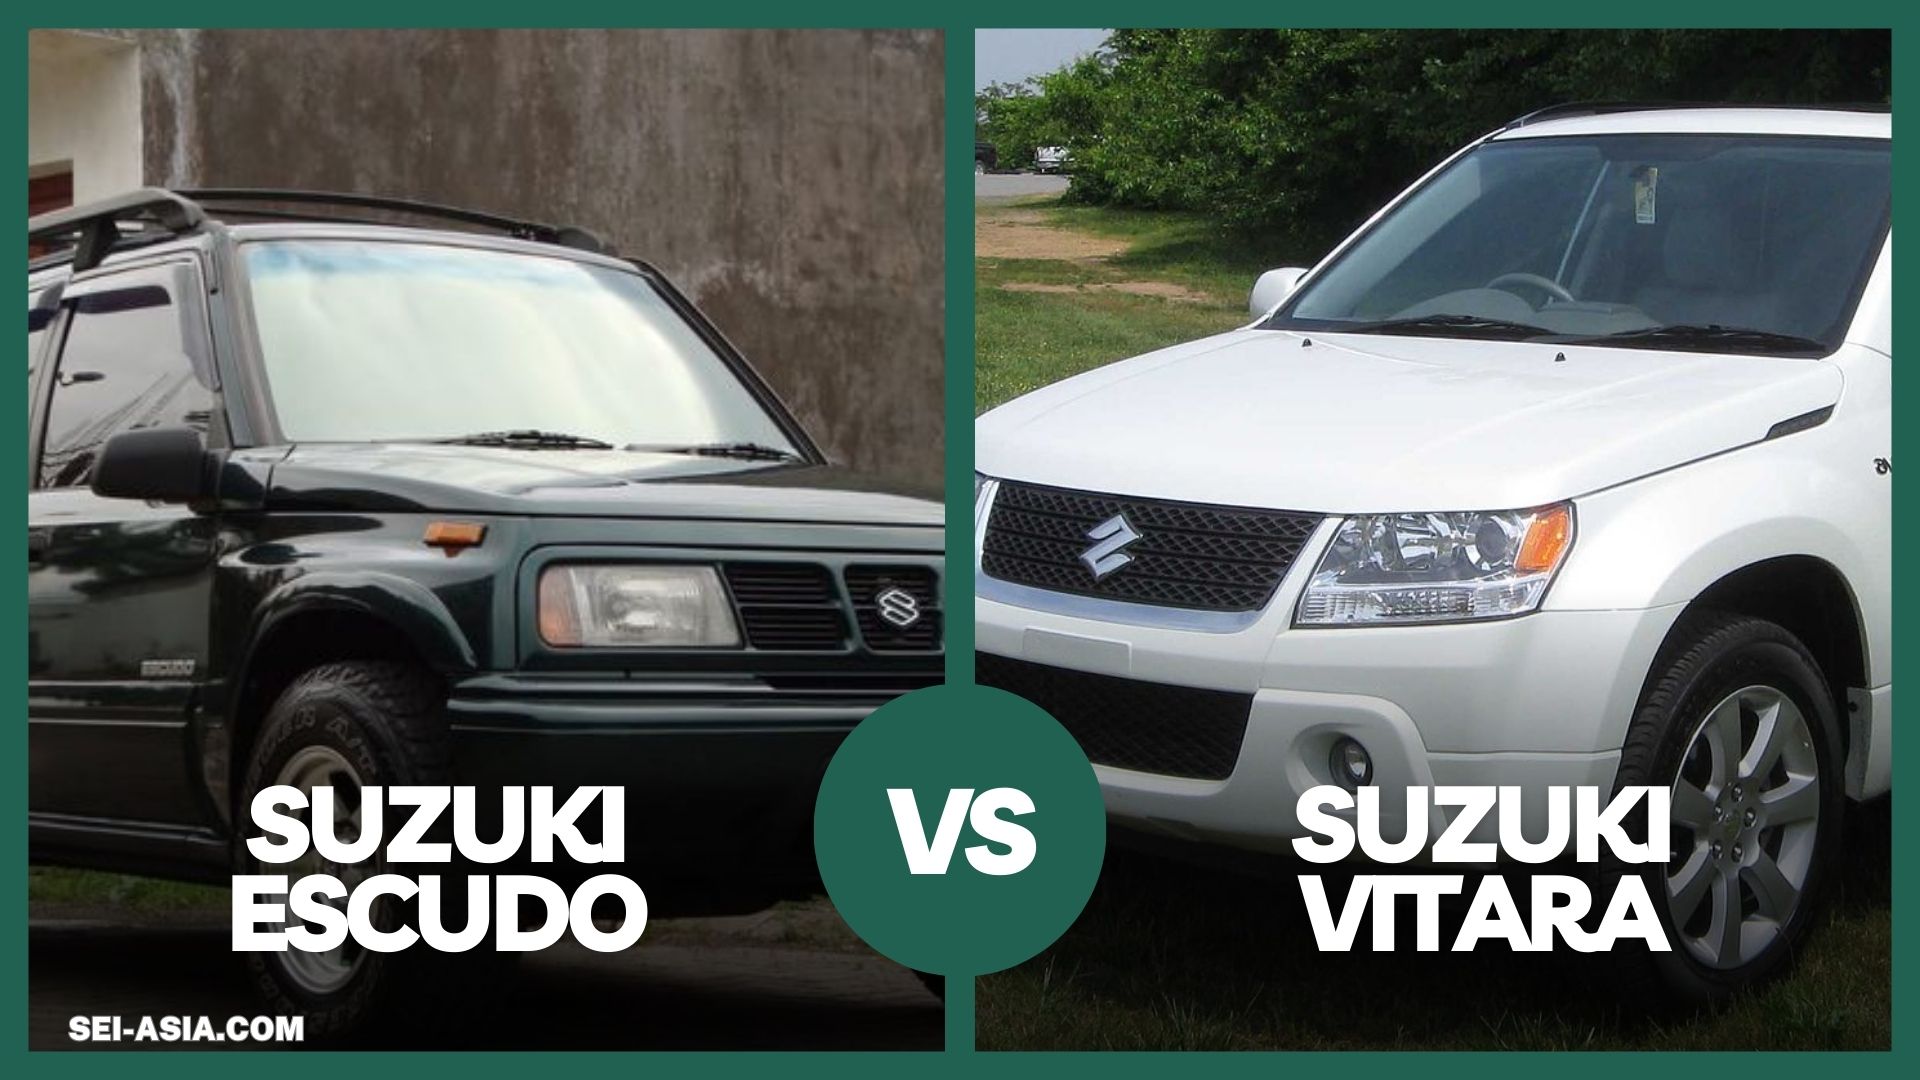 Rahasia Tersembunyi di Balik Kejayaan Suzuki Escudo dan Vitara yang Mengagumkan!